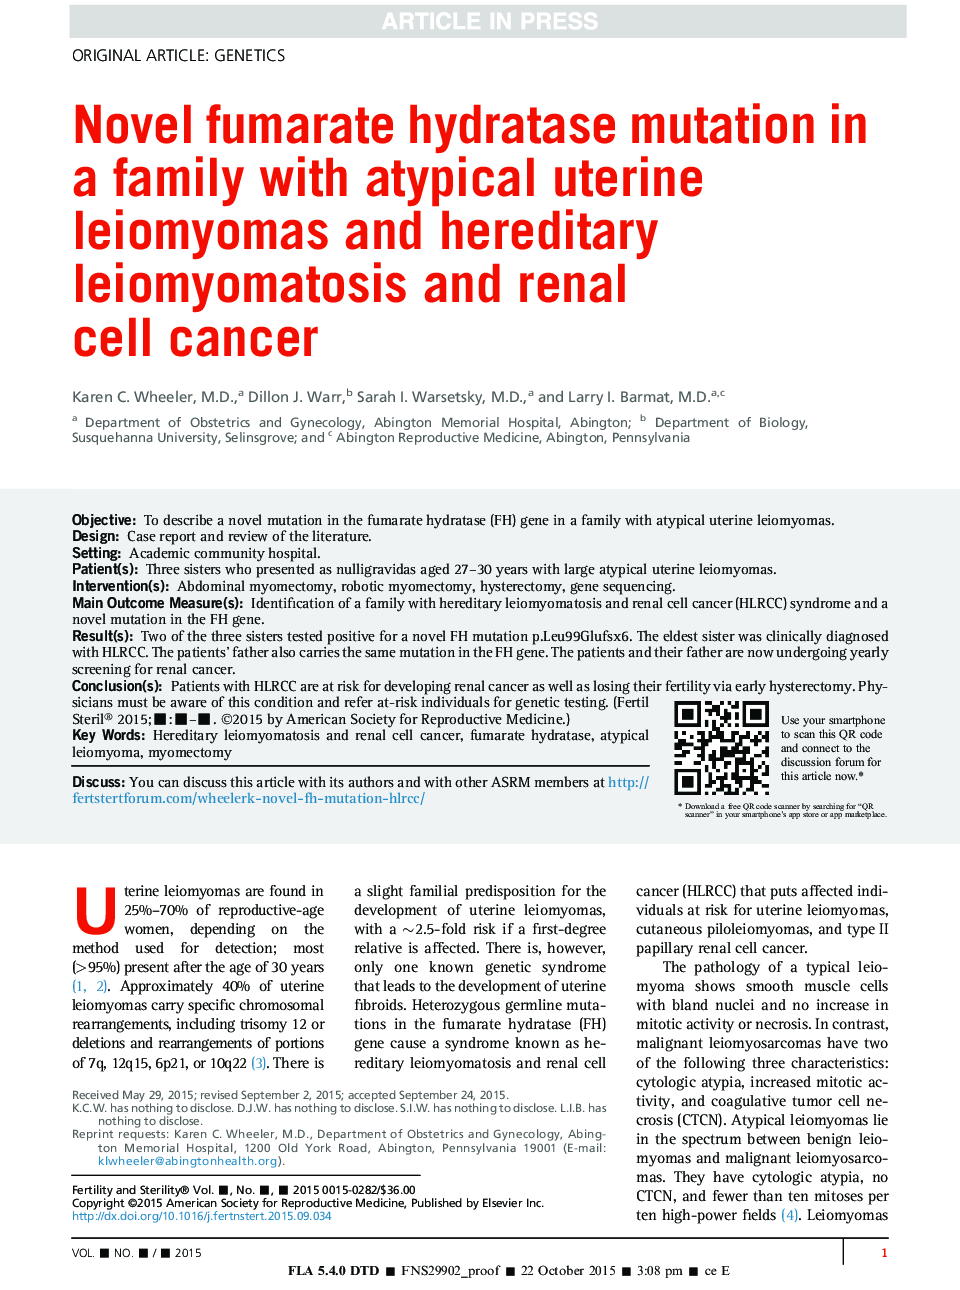 جهش نوترال فومارات هیدراتاز در یک خانواده با لیومیوم های آتتیپی رحمی و لیومیوماتوز ارثی و سرطان سلول های کلیه 